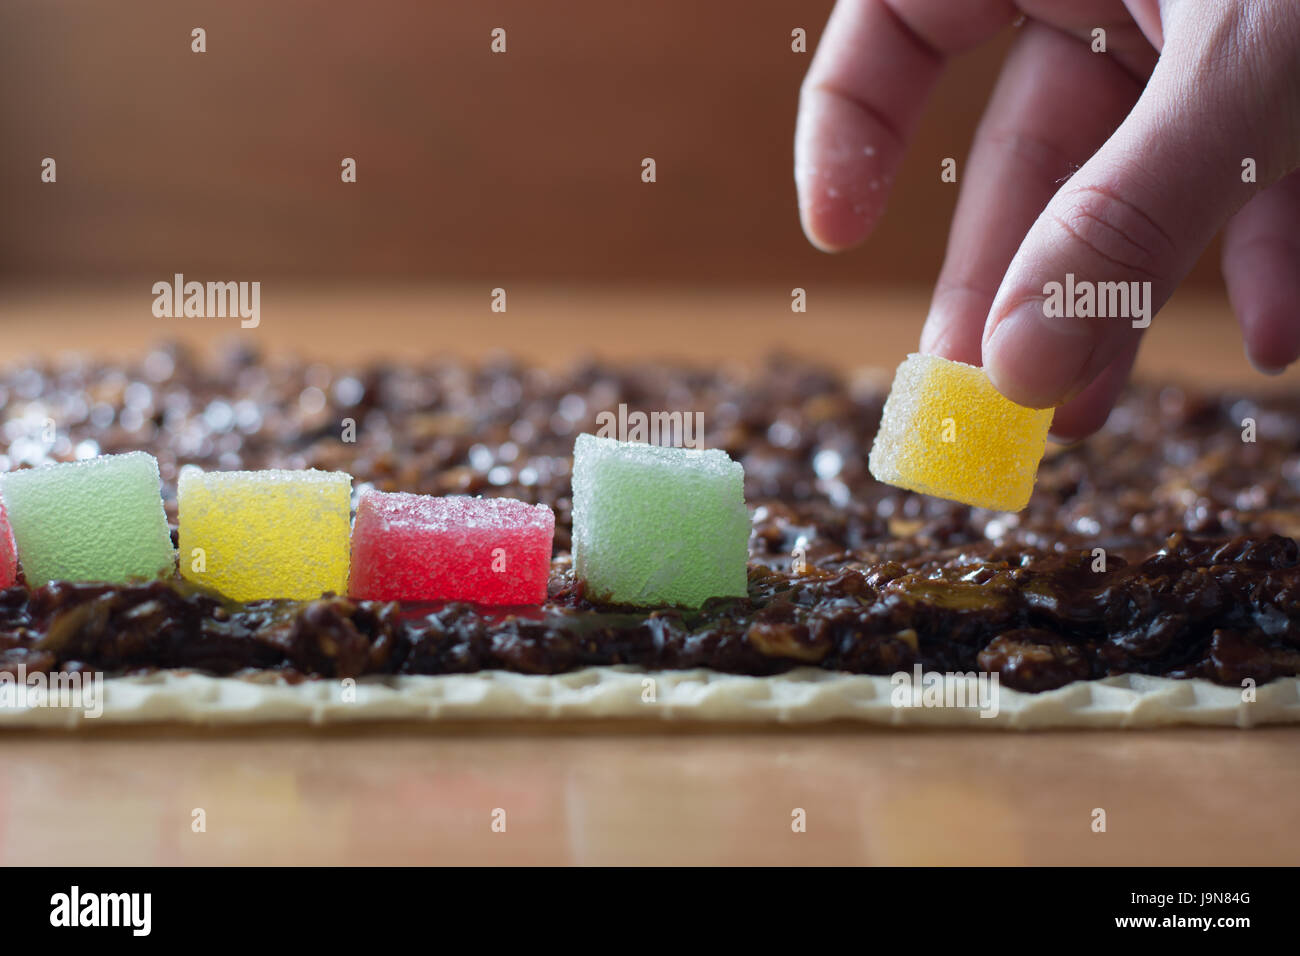 Garniture au chocolat avec noix sur croûte gâteau roulé au chocolat avec des bonbons jelly Banque D'Images